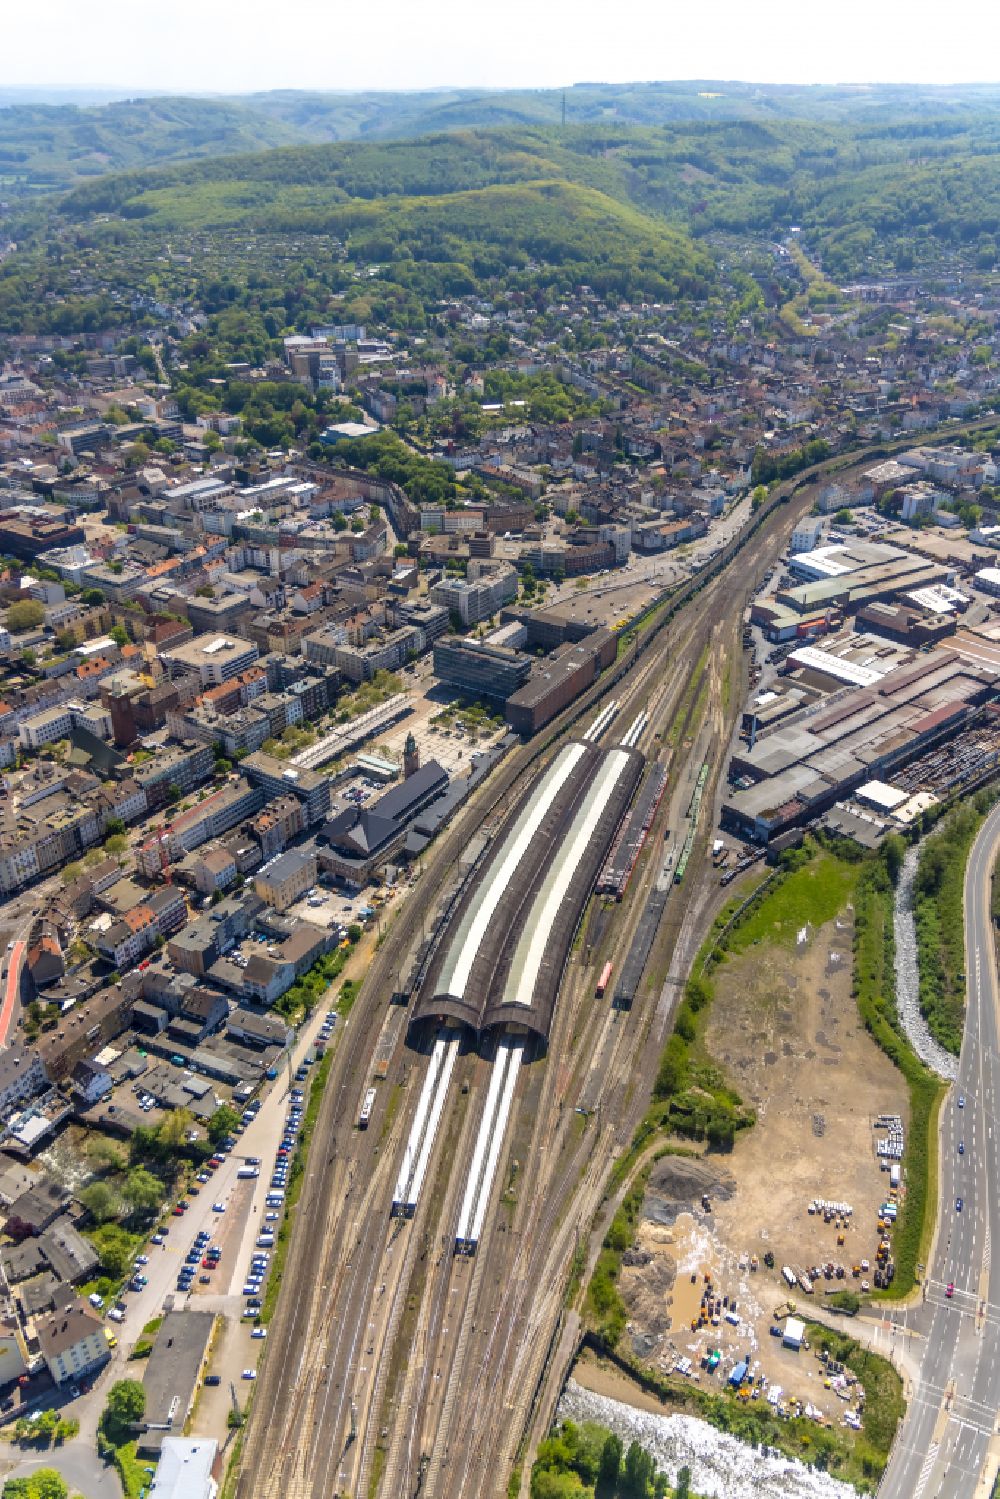 Luftbild Hagen - Gleisverlauf am Hauptbahnhof der Deutschen Bahn in Hagen im Bundesland Nordrhein-Westfalen, Deutschland